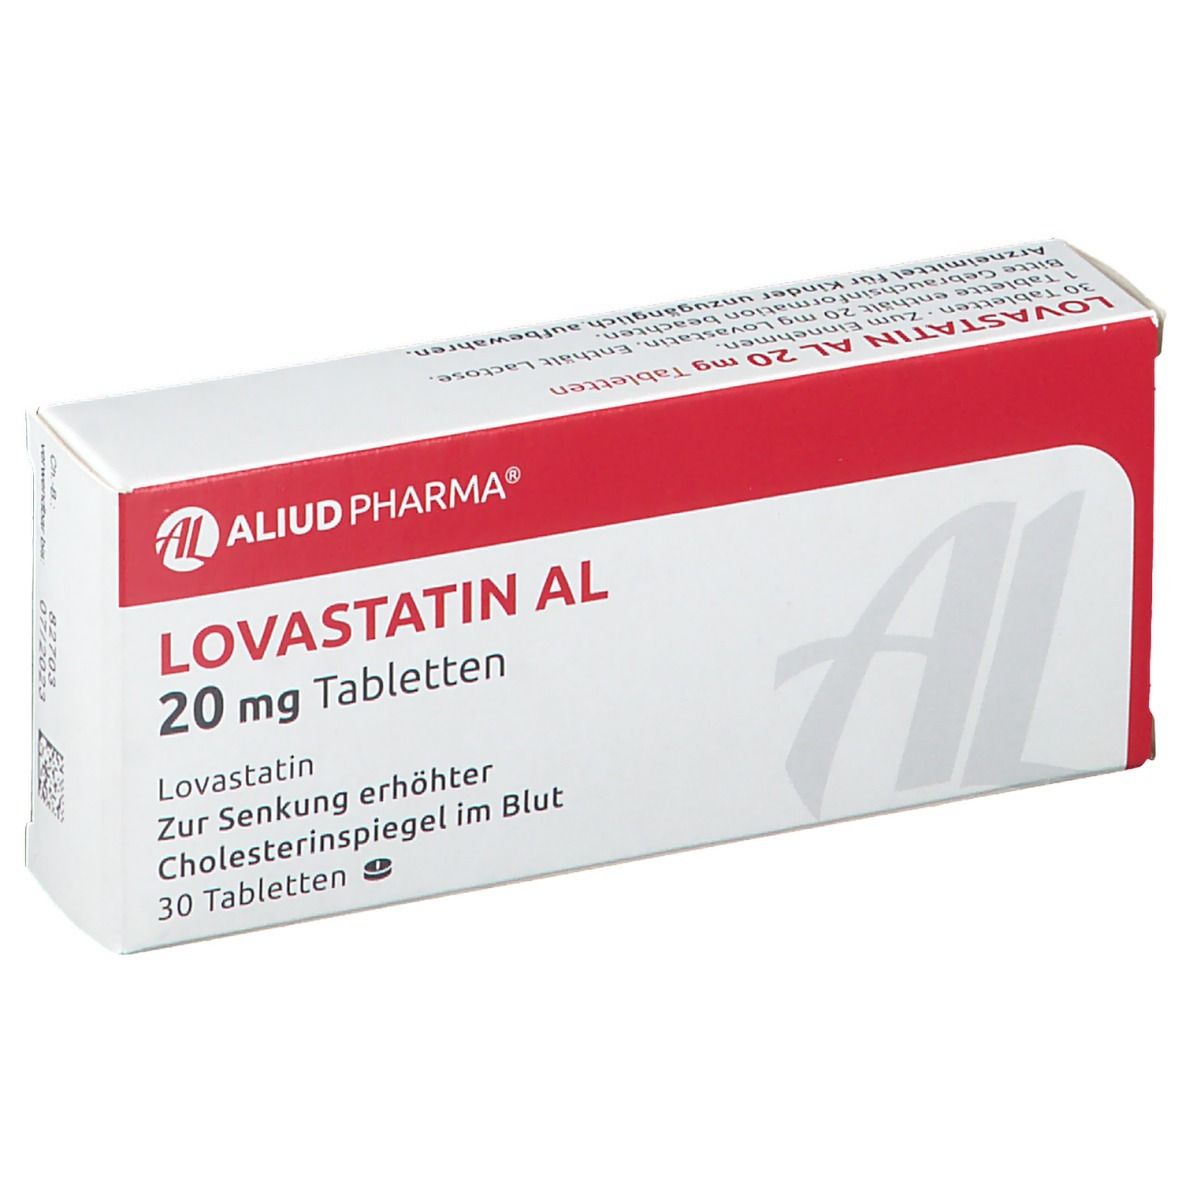 Lovastatin Al 20 mg